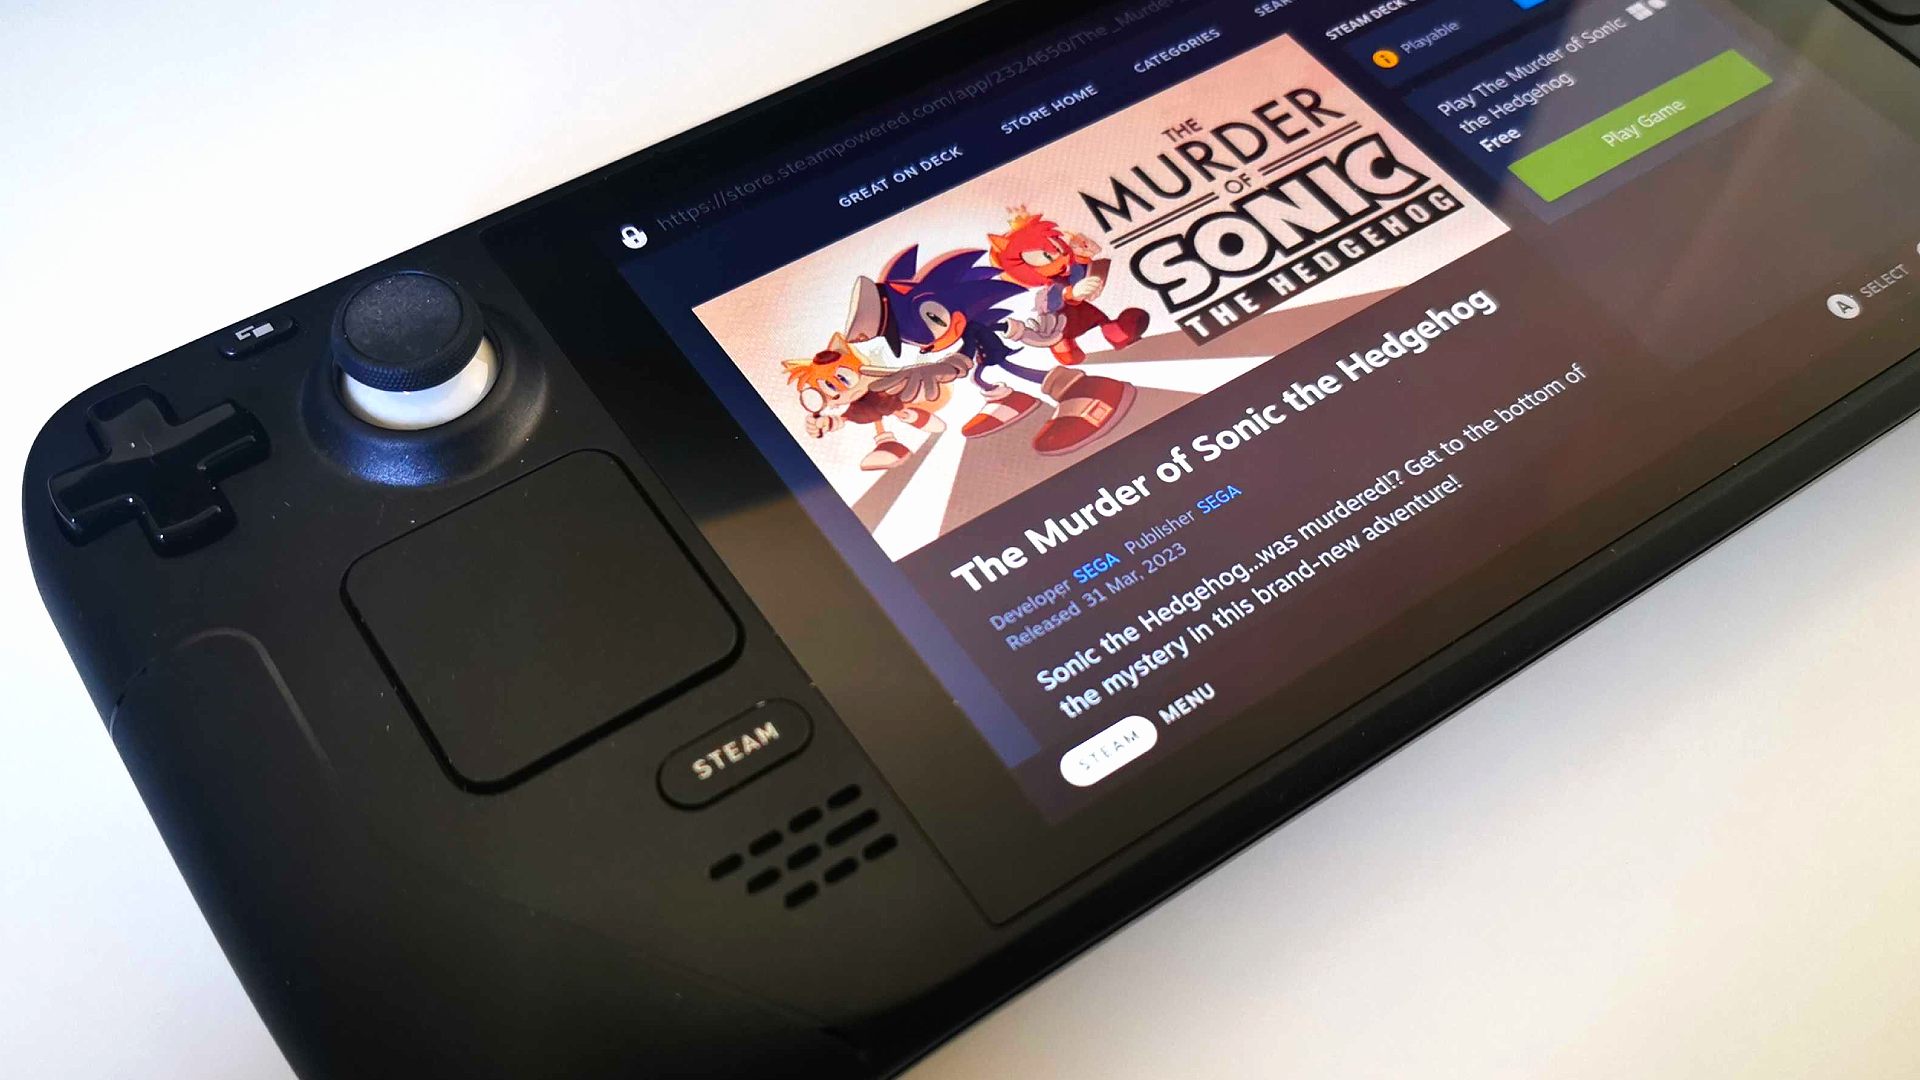 Der Mord an Sonic the Hedgehog Steam Deck: Storefront-Seite auf dem Bildschirm des Handhelds